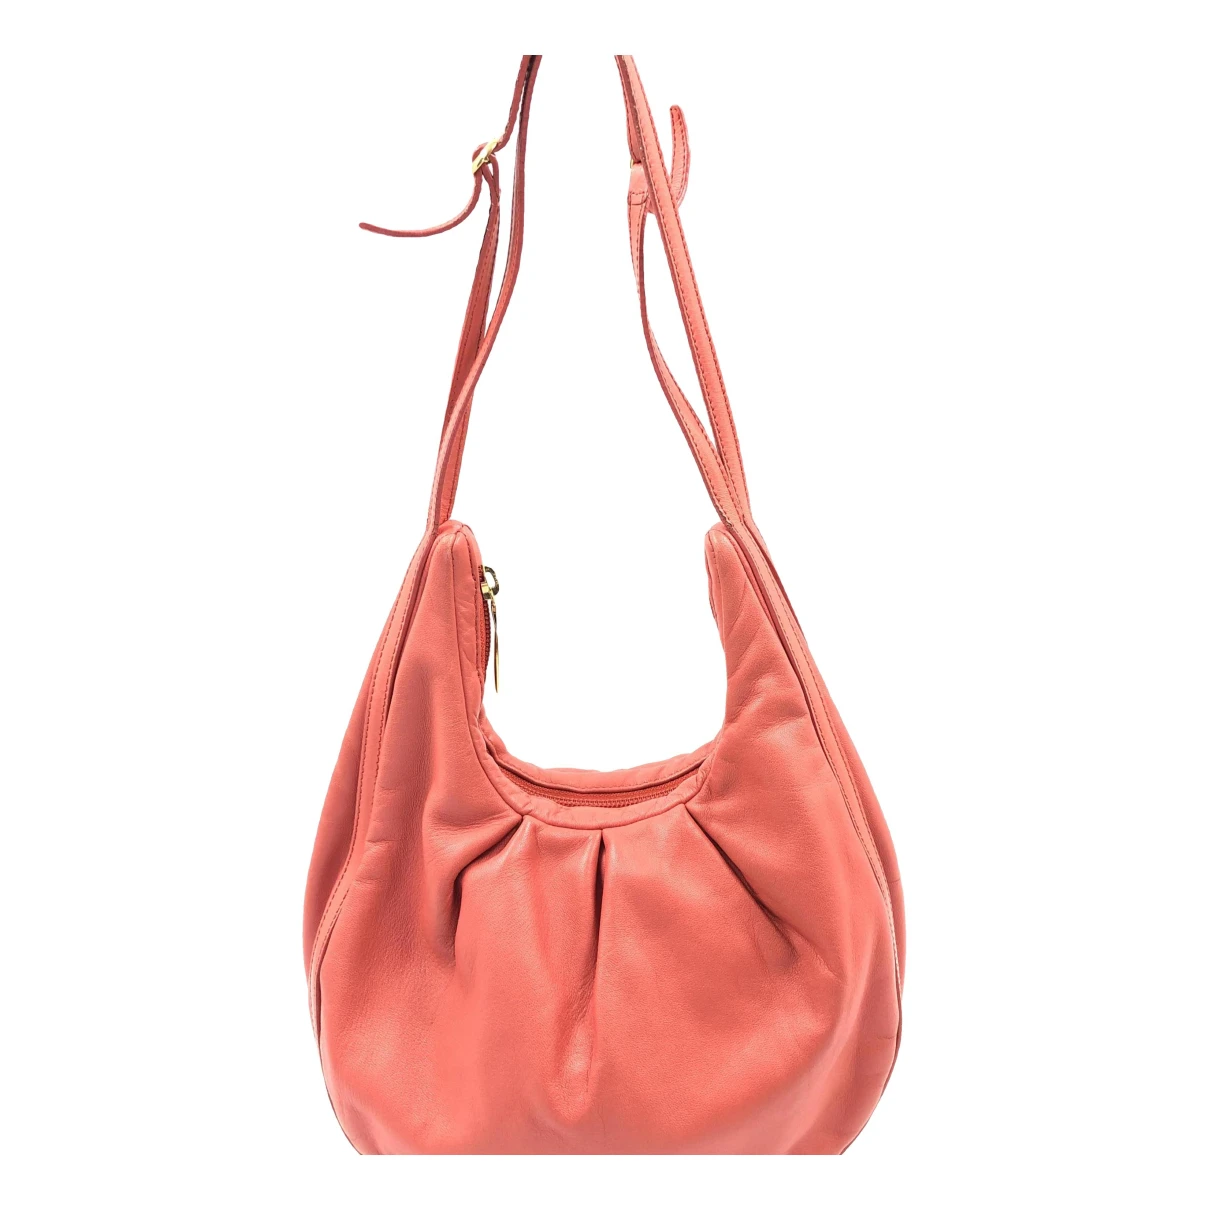 Pre-owned Loewe Leather Handbag In Red